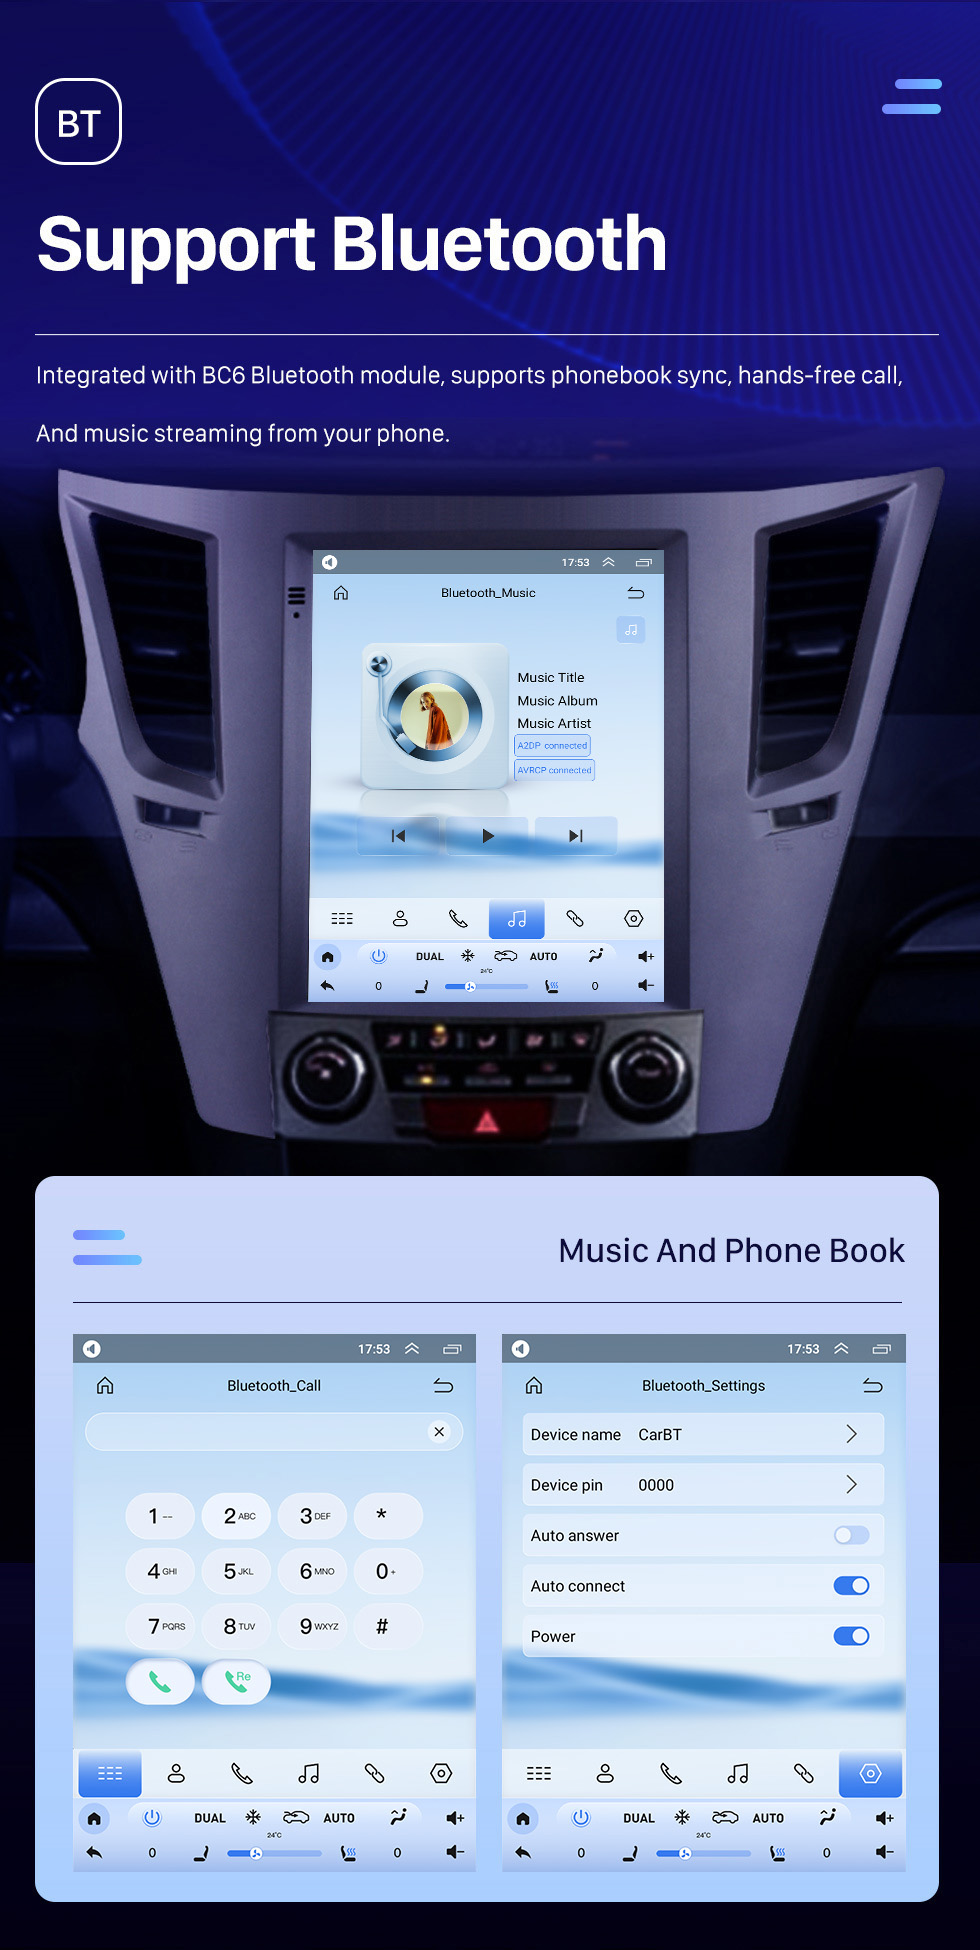 Seicane Tesla carplay Android Aftermarket Radio para Subaru Outback 2010 2011 2013 2014 com Carplay/Android Auto DSP Bluetooth Navegação GPS 